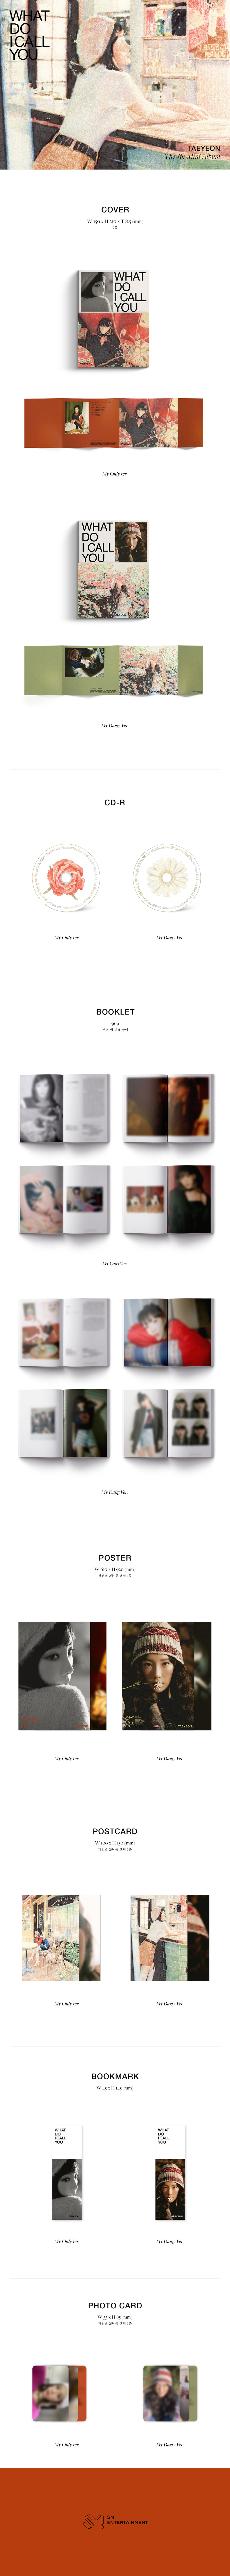 TAEYEON - MINI Album Vol.4 [What Do I Call You] taeyeon pop popalbum taeyeonalbum taeyeonminialbum whatdoicallyou